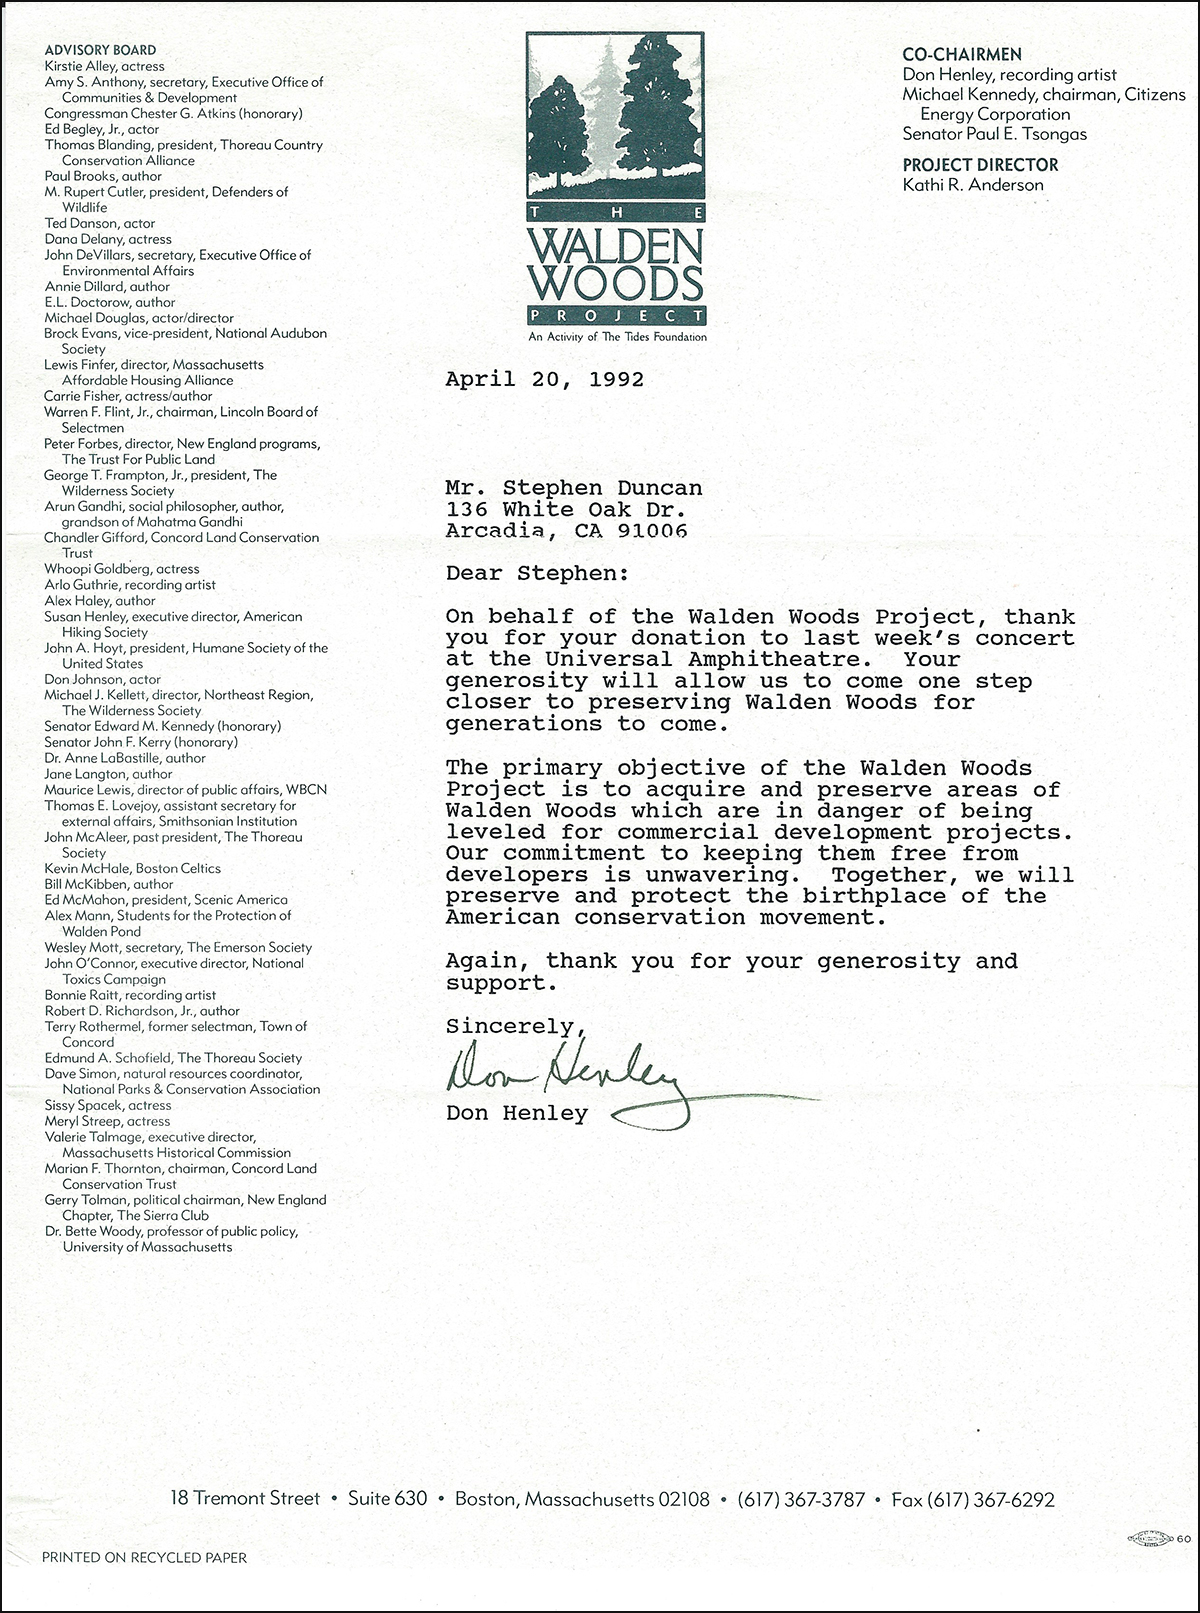 Don Henley - Walden Woods letter